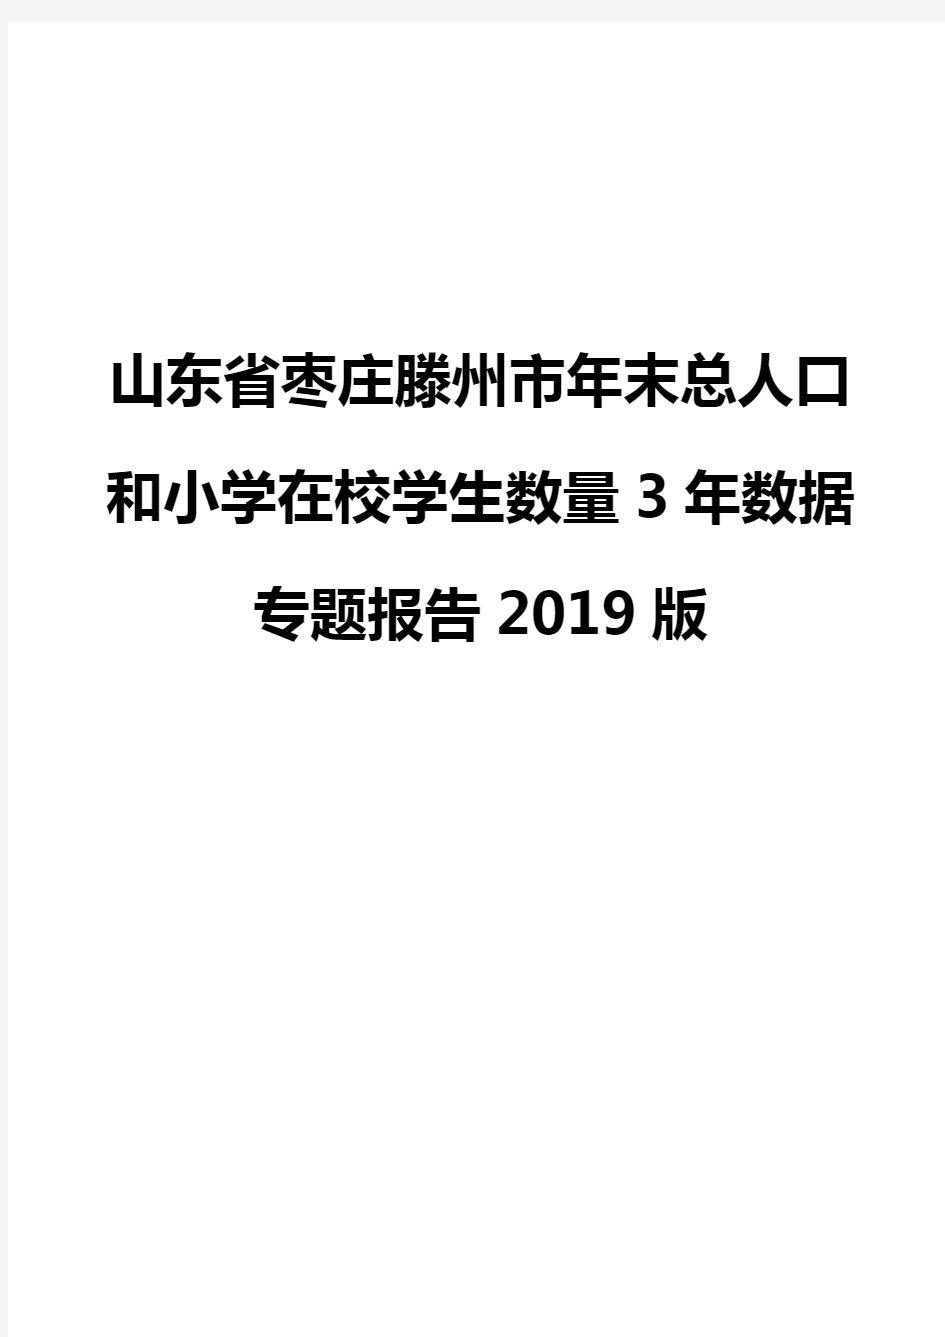 山东省枣庄滕州市年末总人口和小学在校学生数量3年数据专题报告2019版